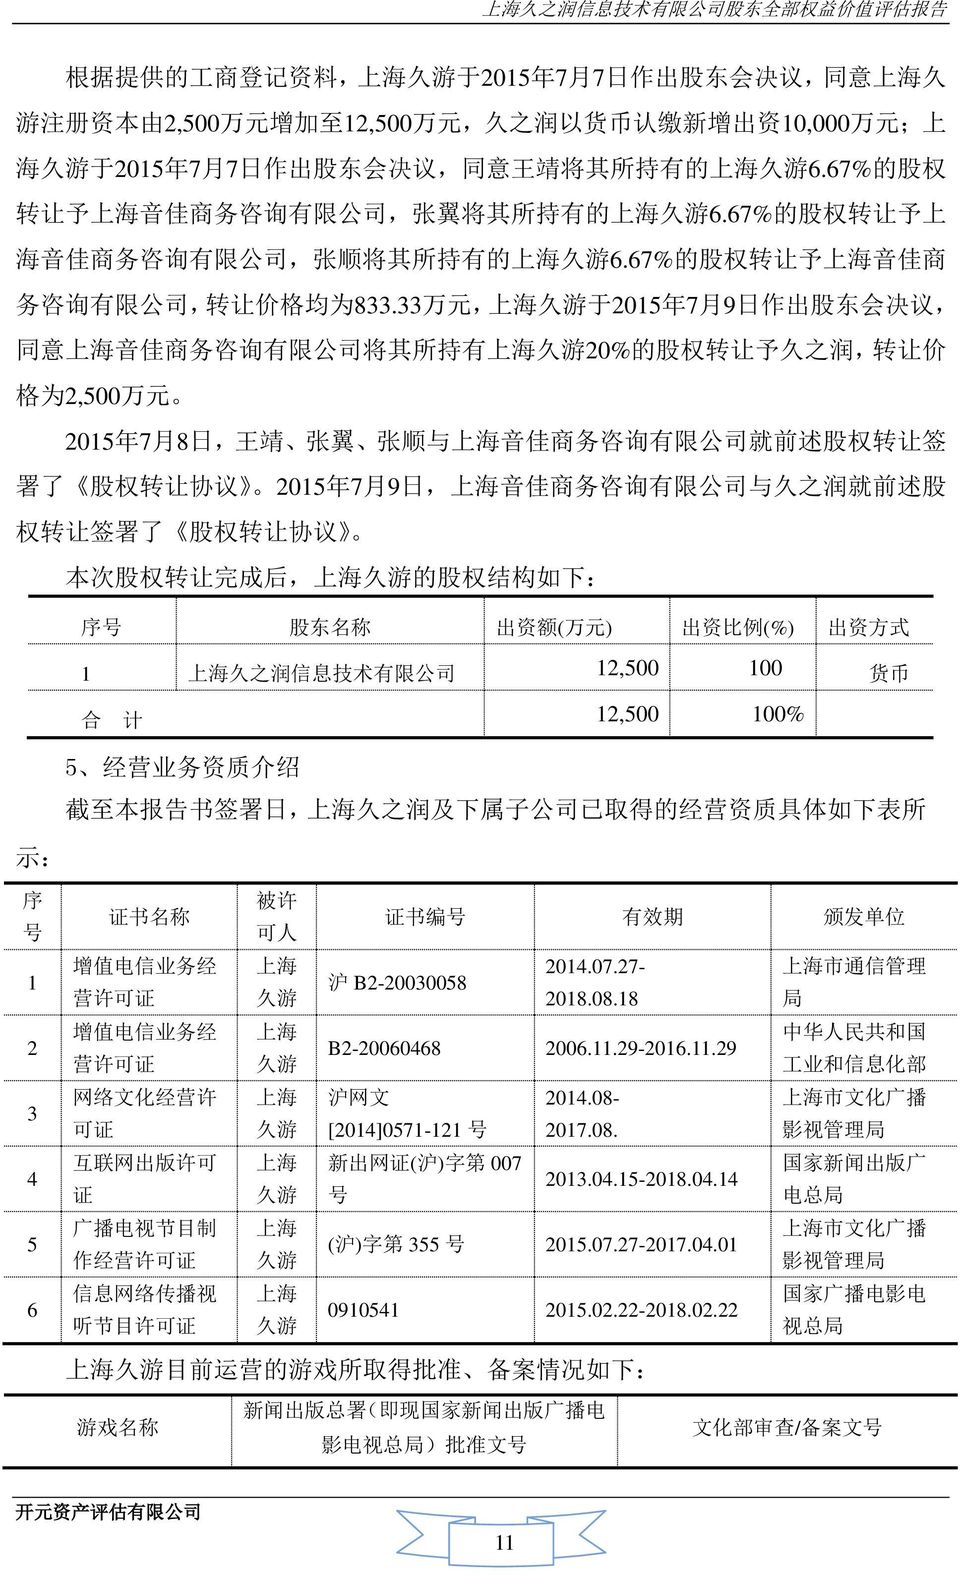 67% 的 股 权 转 让 予 上 海 音 佳 商 务 咨 询 有 限 公 司, 张 顺 将 其 所 持 有 的 上 海 久 游 6.67% 的 股 权 转 让 予 上 海 音 佳 商 务 咨 询 有 限 公 司, 转 让 价 格 均 为 833.